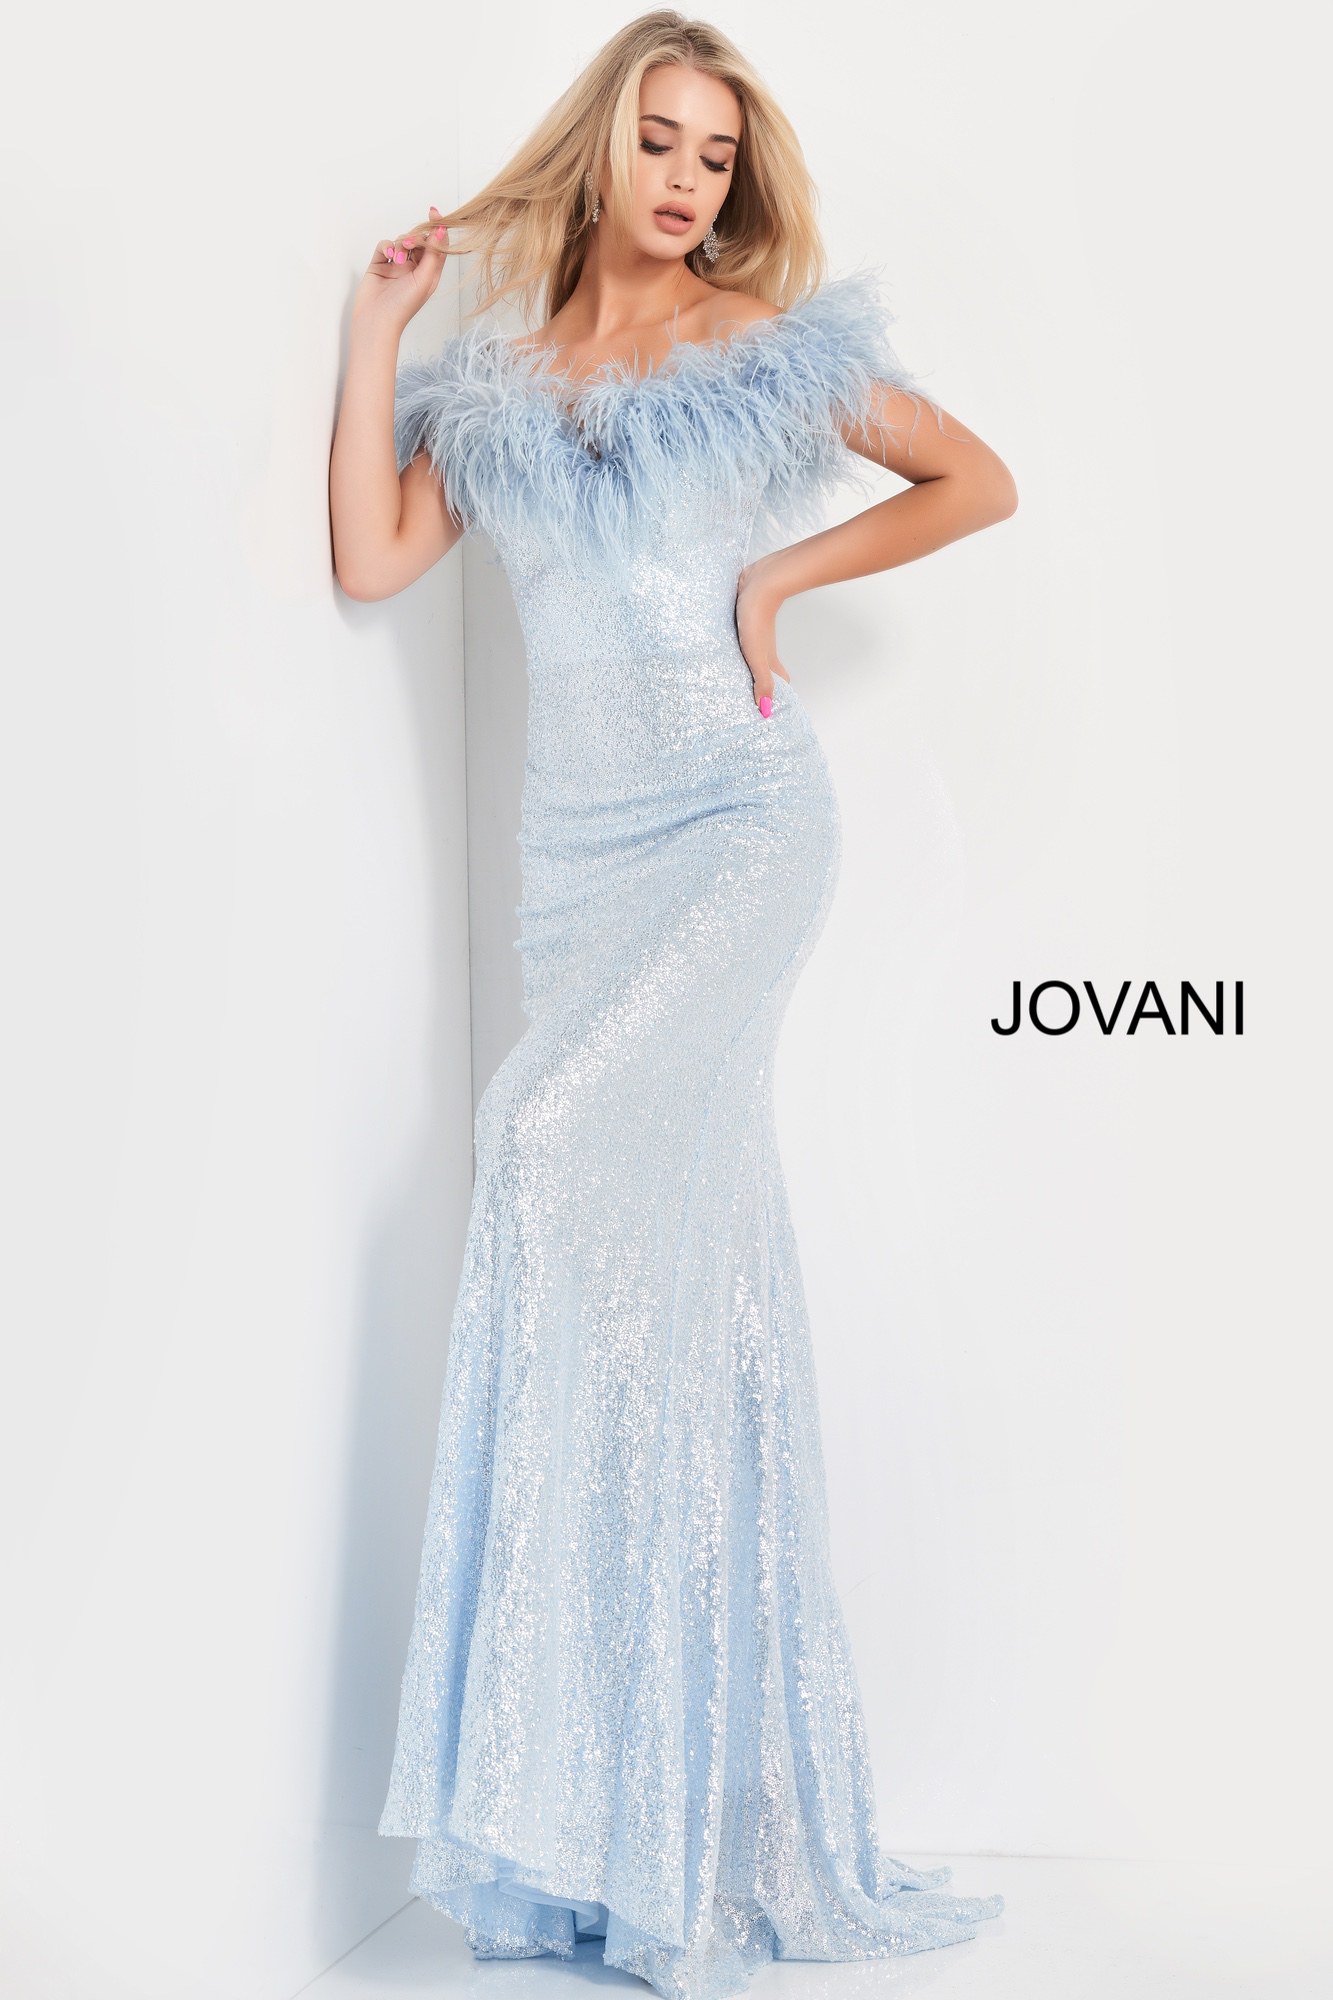 Jovani 06166 | Blue Off the Shoulder Sequin Prom Dress